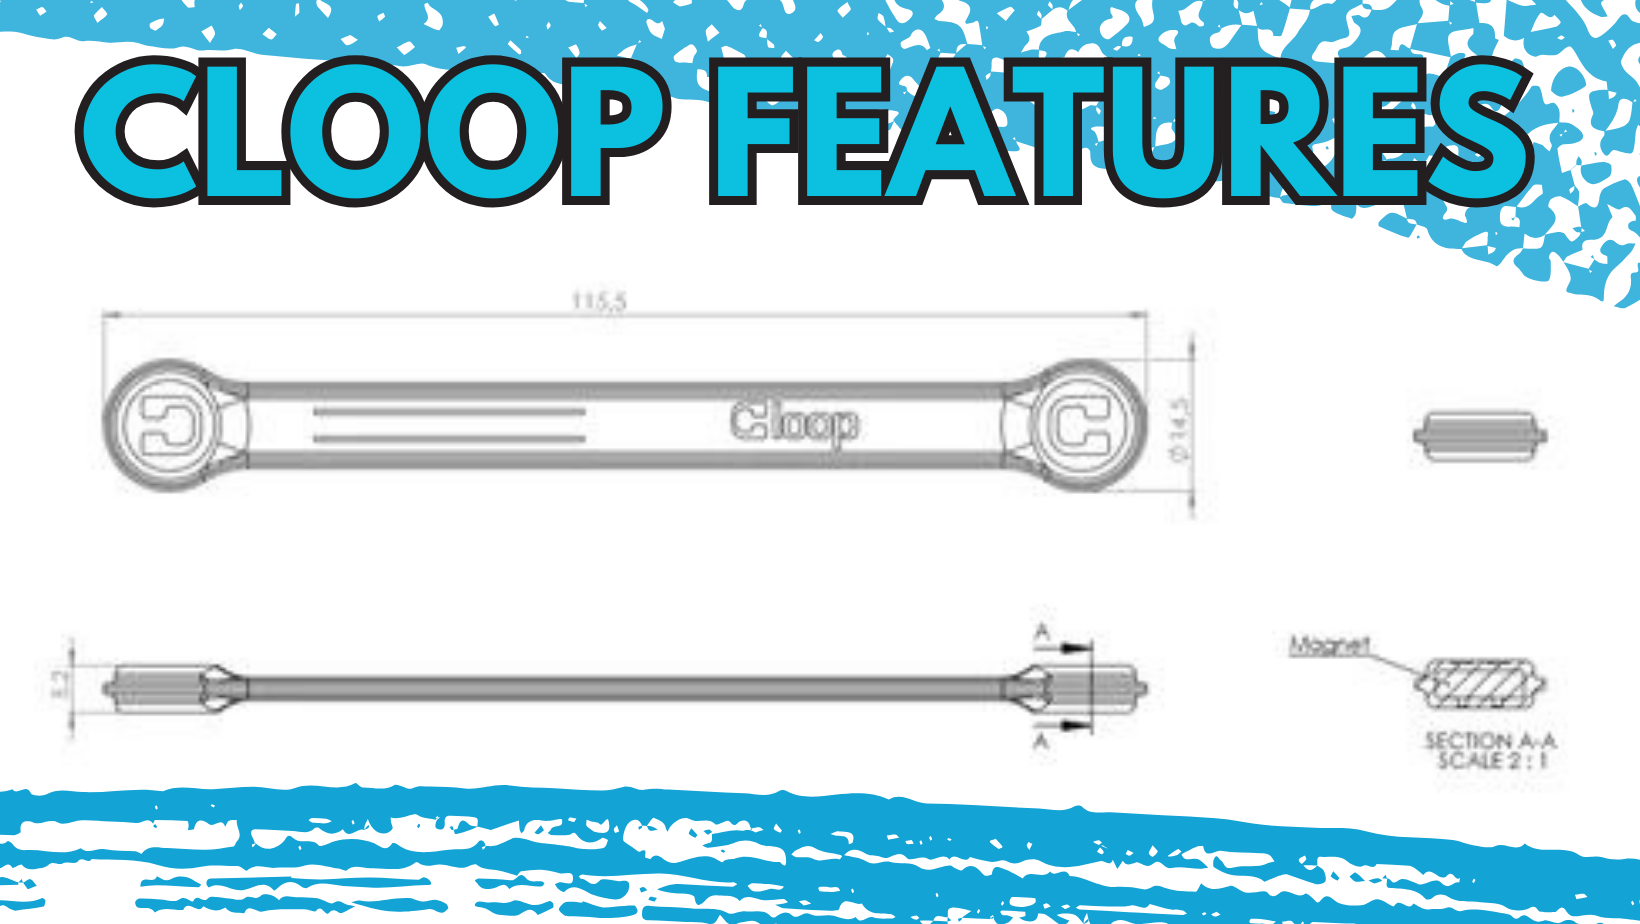 Cloop Features